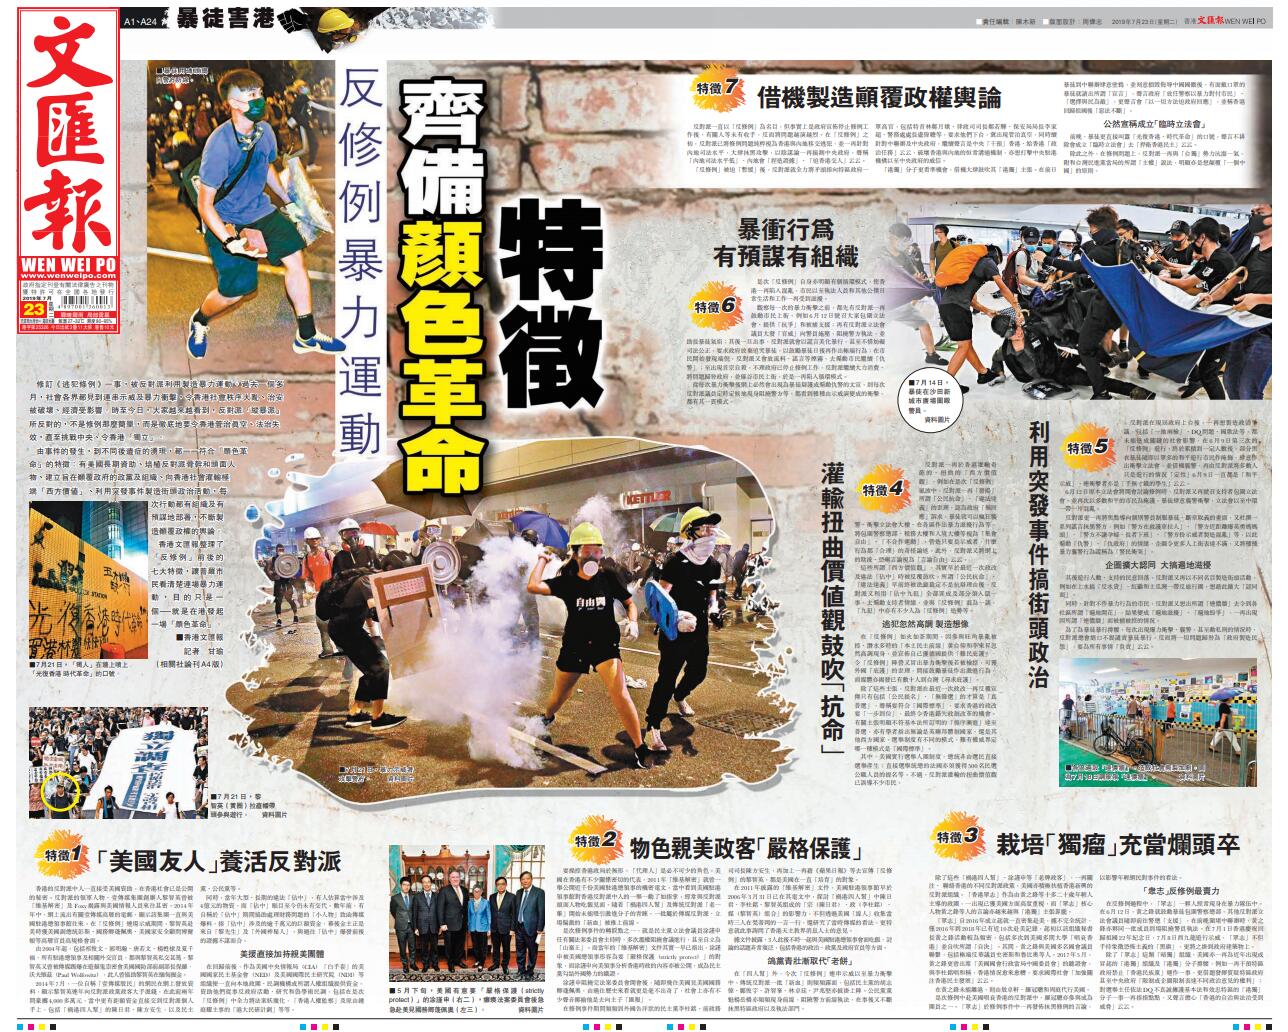 7月23日香港文匯報整理了u反修例v前後的七大特徵A讓普羅市民看清楚連場暴力運動A目的只是一個-就是在港發起一場u顏色革命vC 報紙截圖